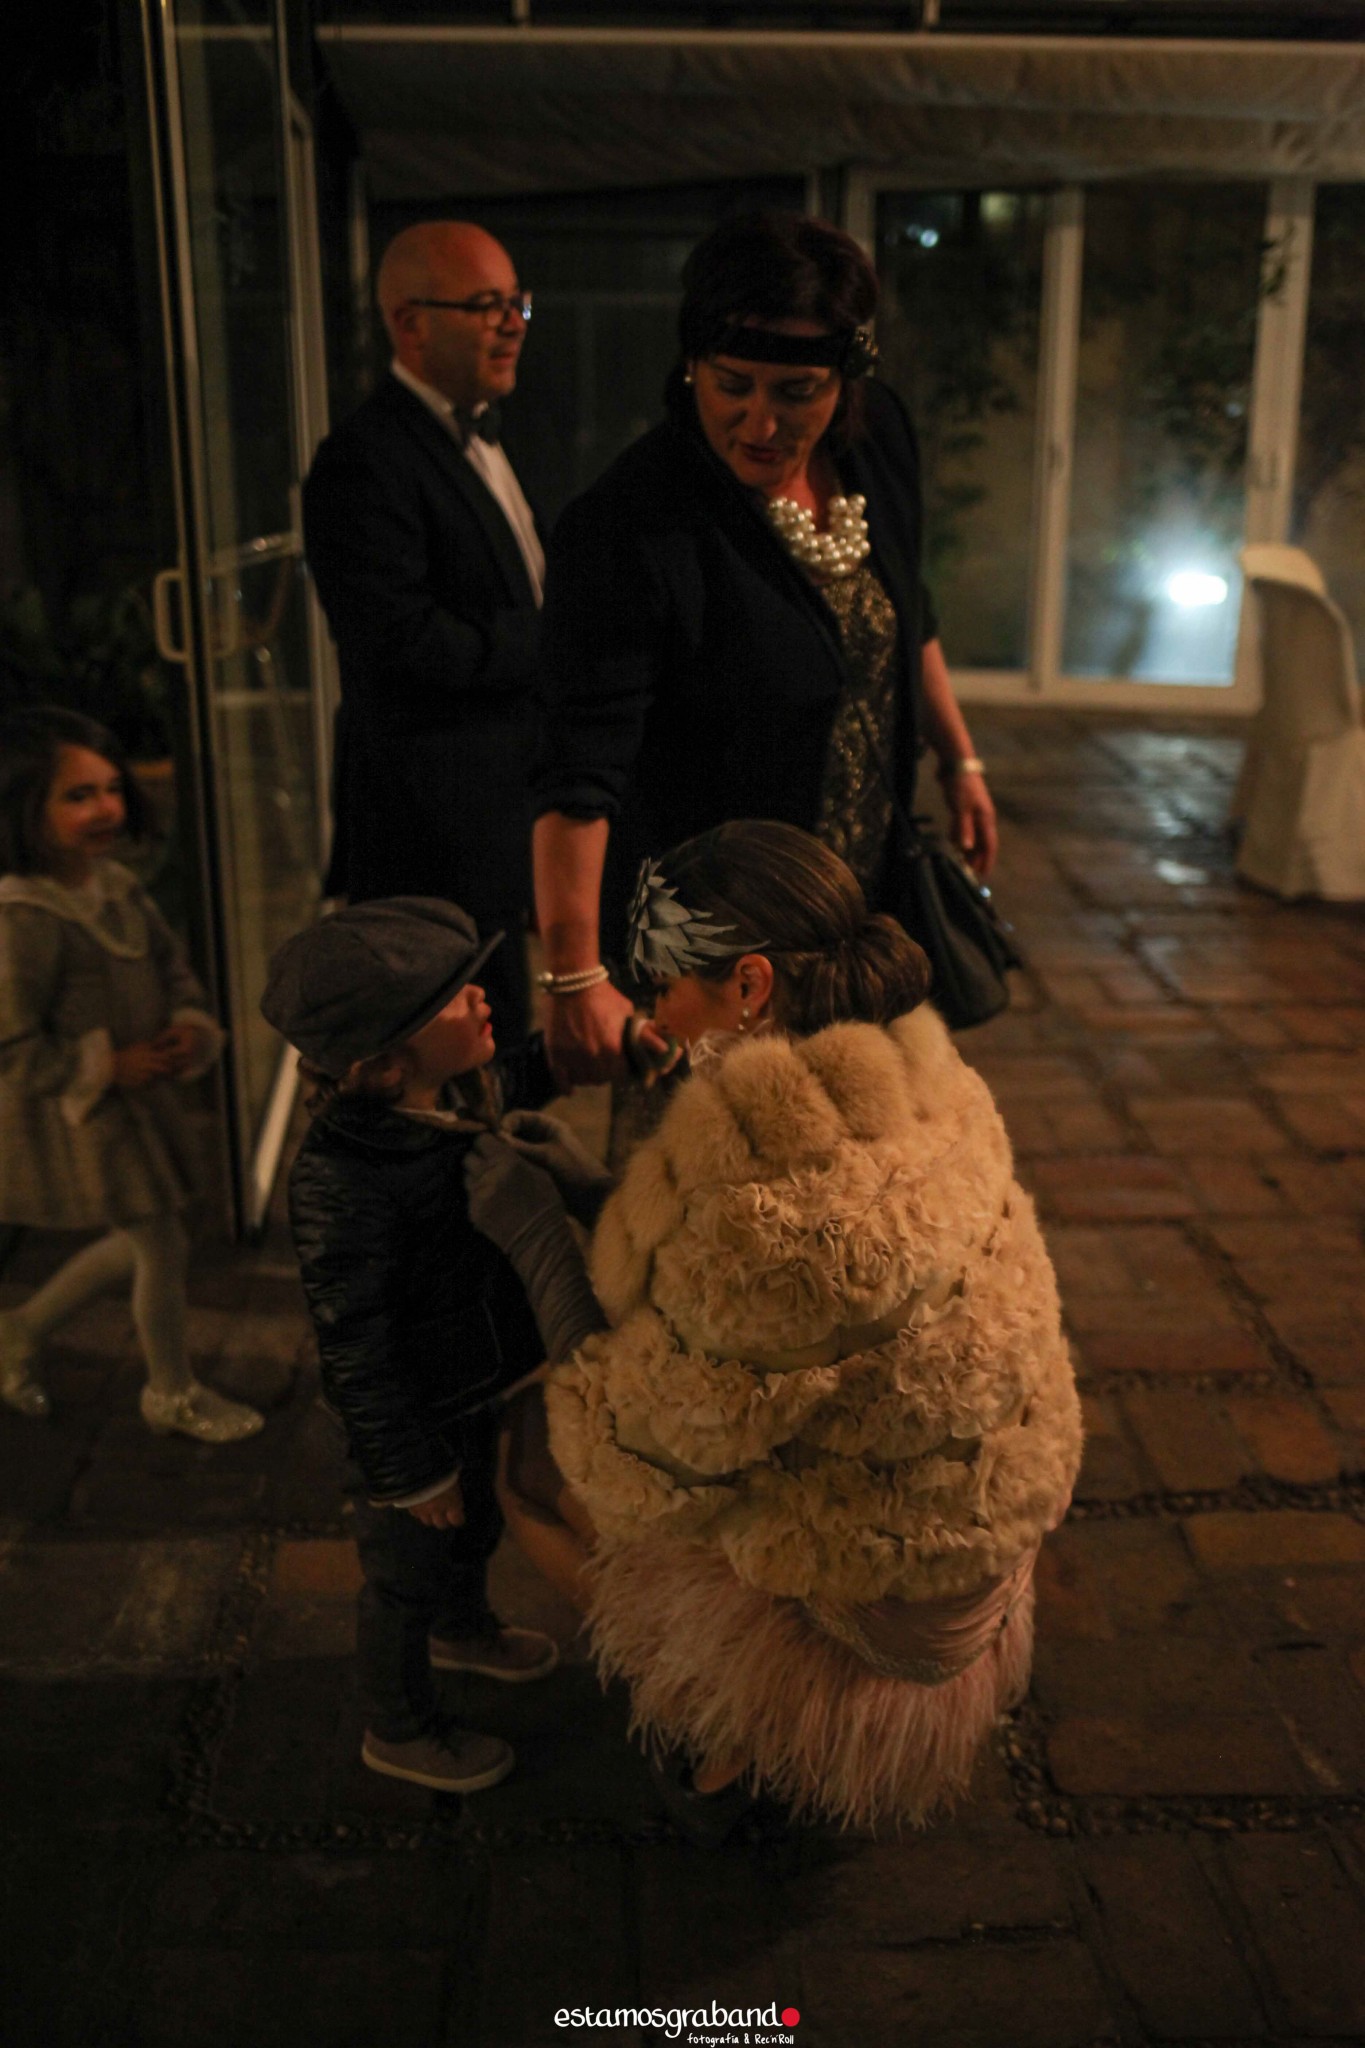 Fali-Bea-20-de-78 Fiesta Años 20 [La Teta de Julieta, Cádiz] - video boda cadiz